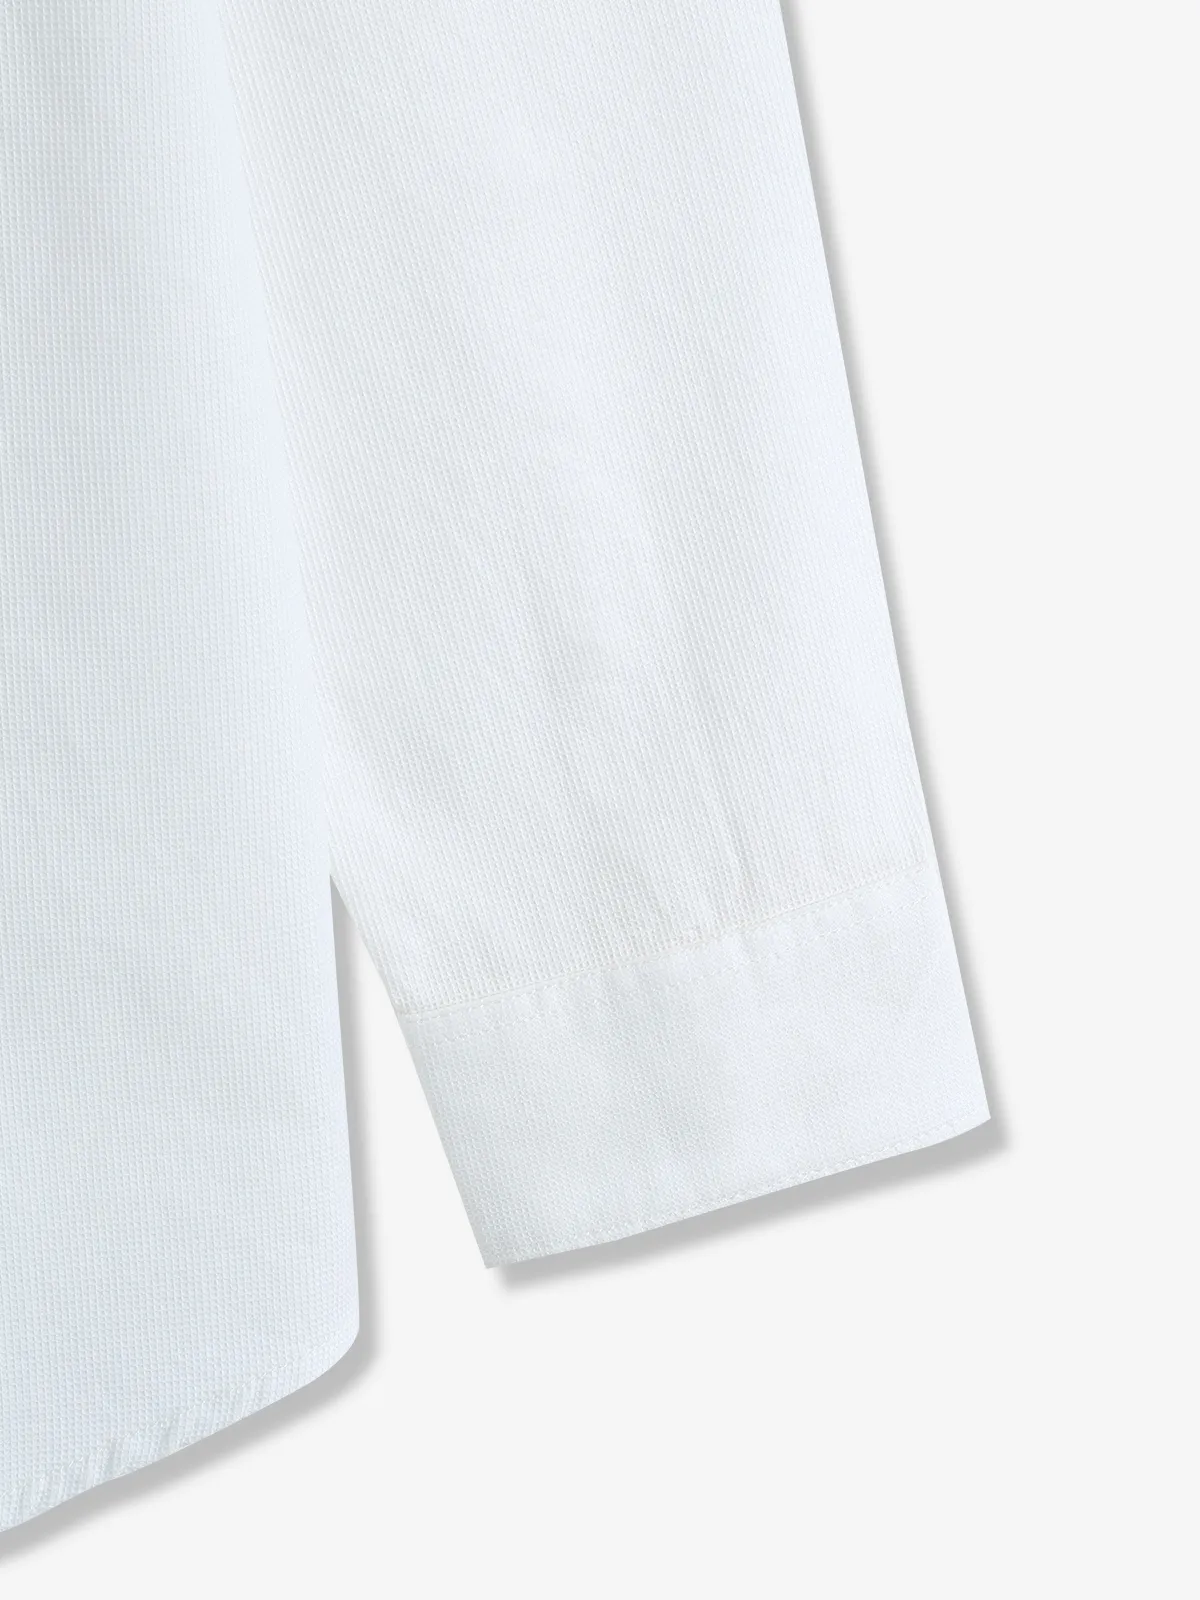 GIANTI white textured cotton casual shirt